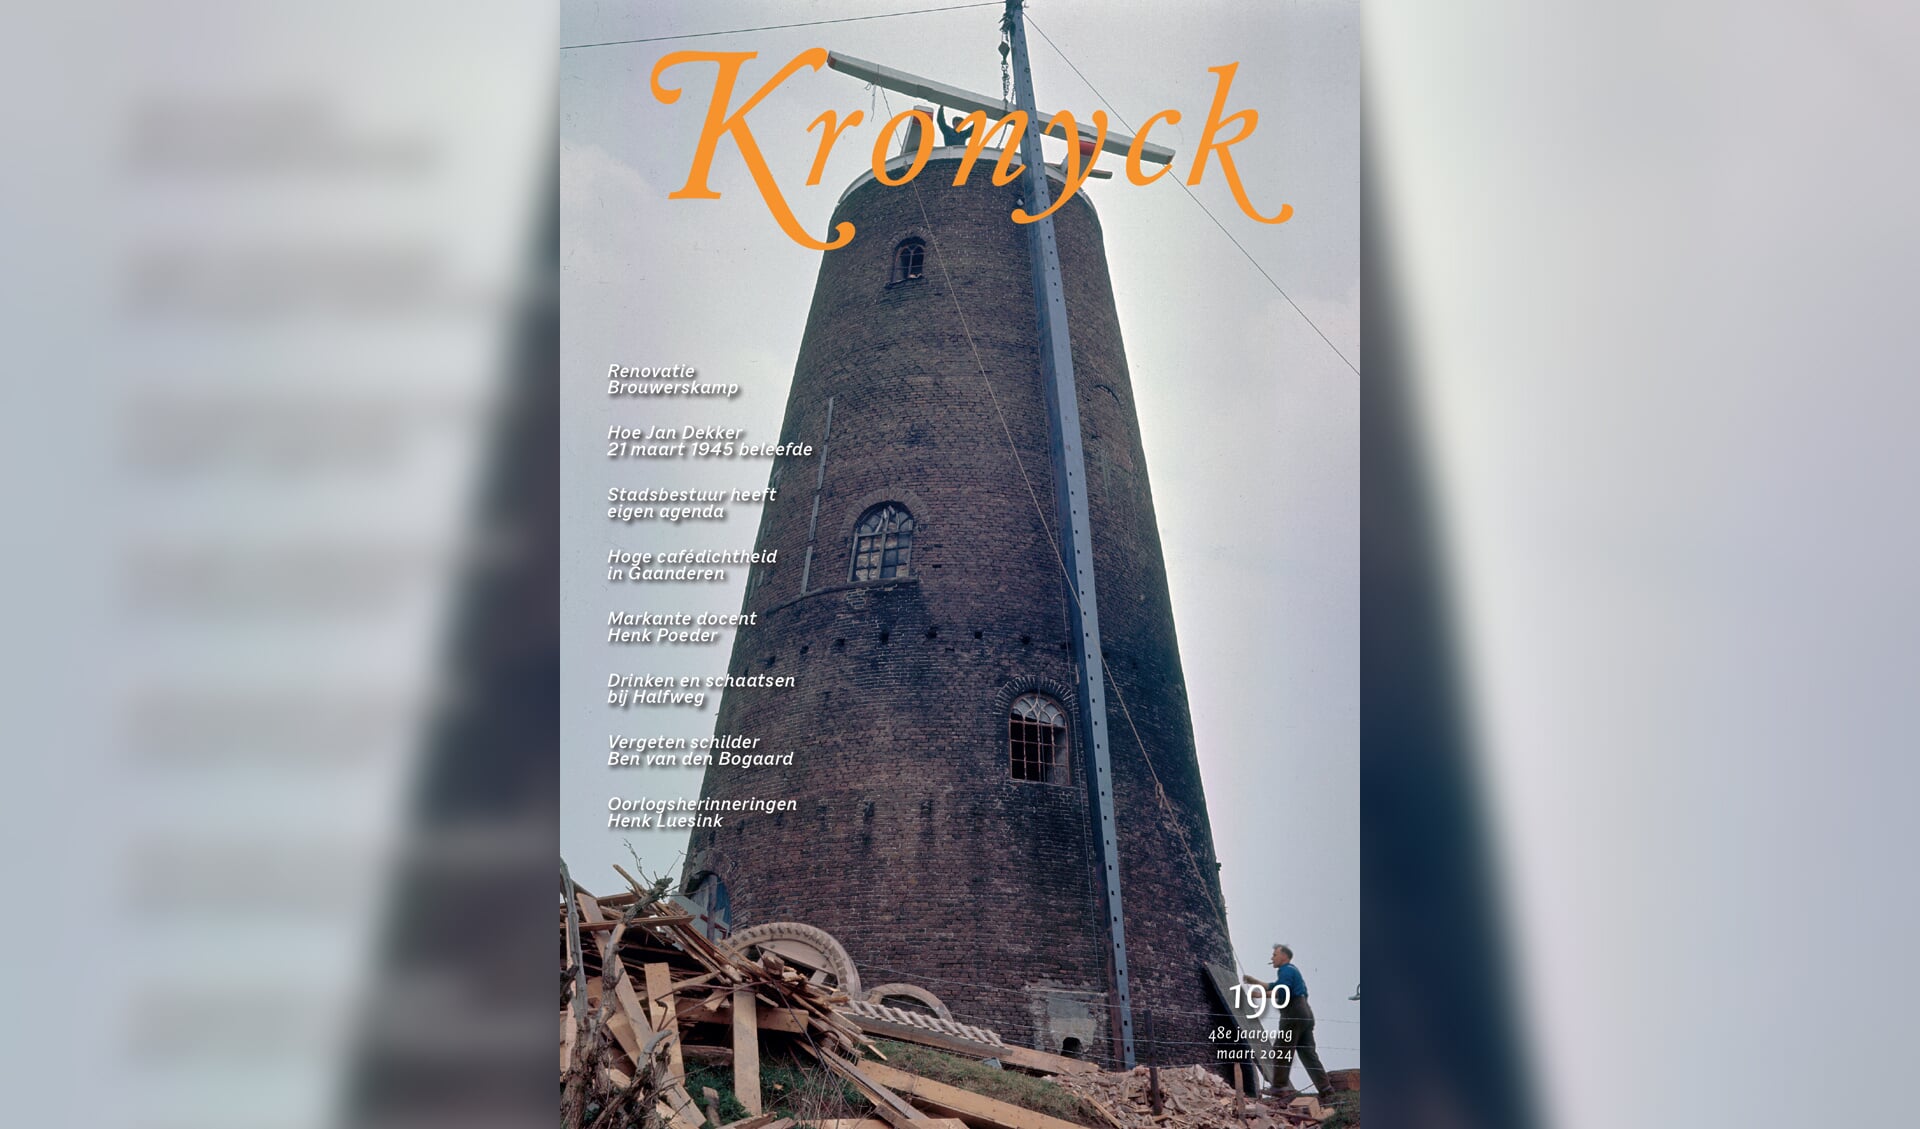 Restauratie van de Walmolen (1965) op de cover. Foto: Rijksdienst voor het Cultureel Erfgoed